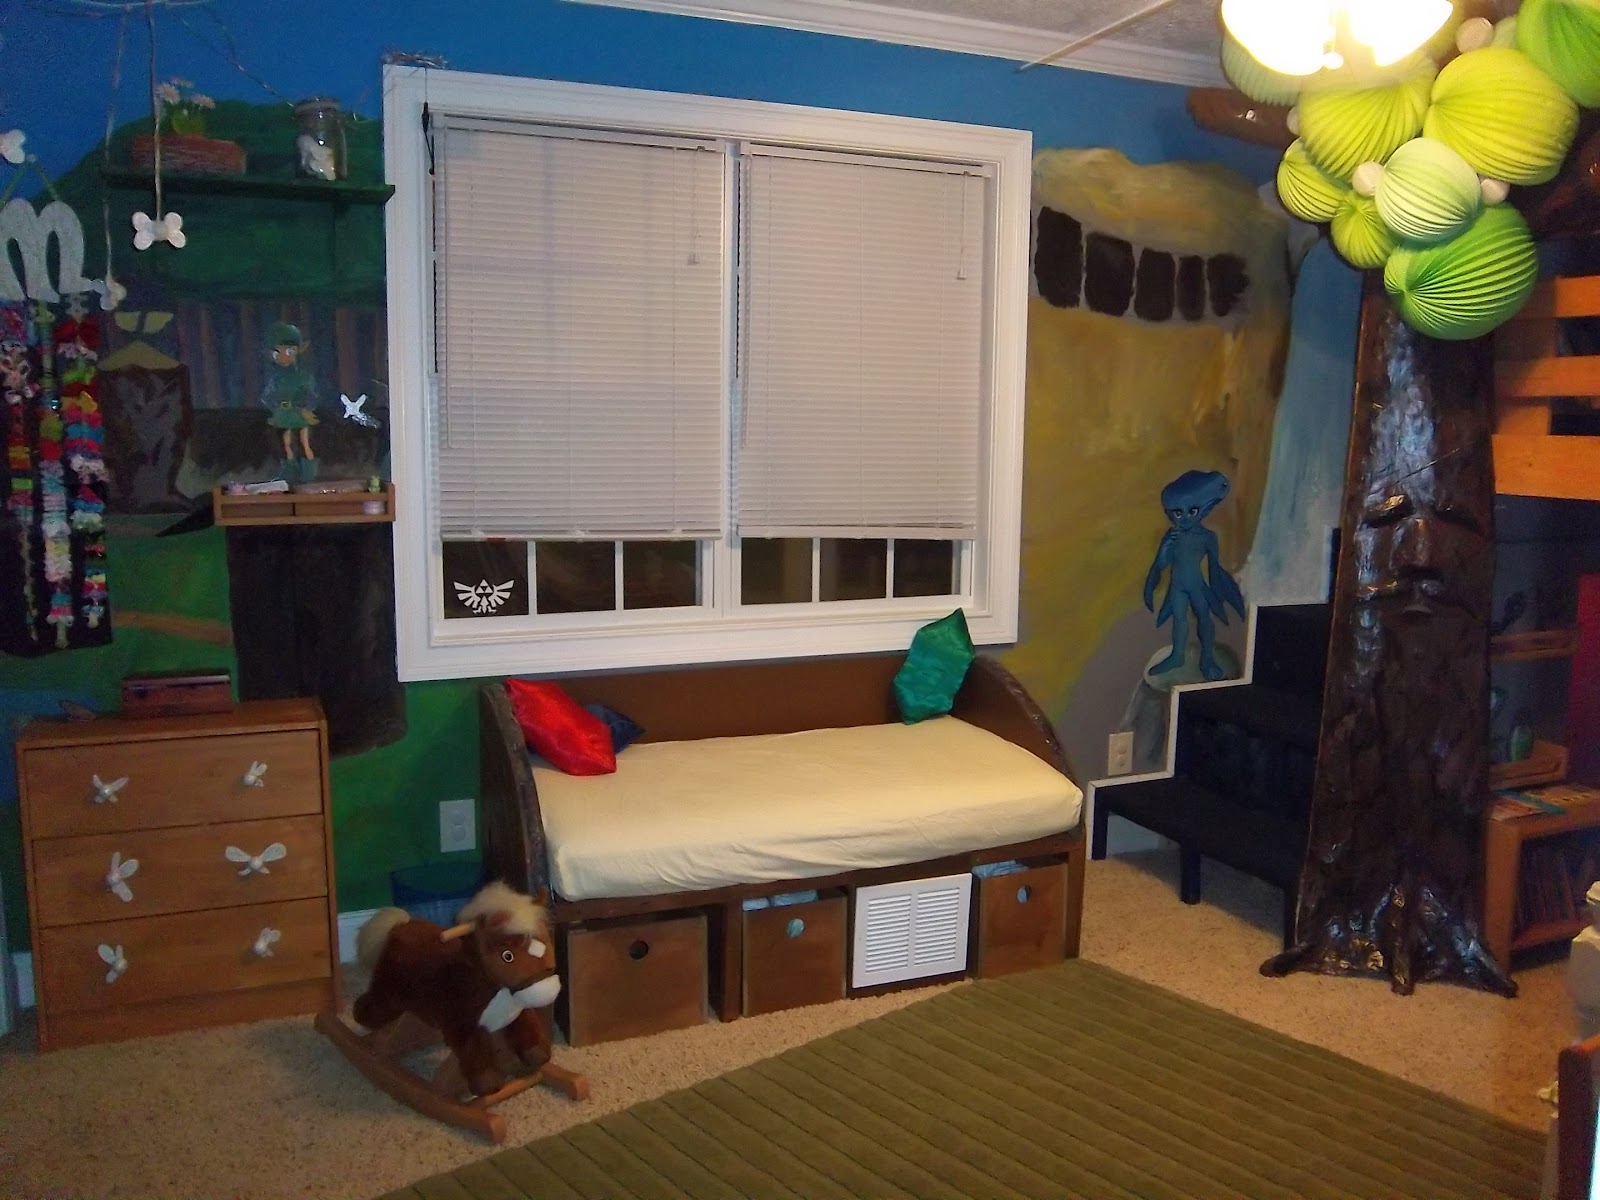 Parents Design Kids' Room Around Zelda Zelda Dungeon